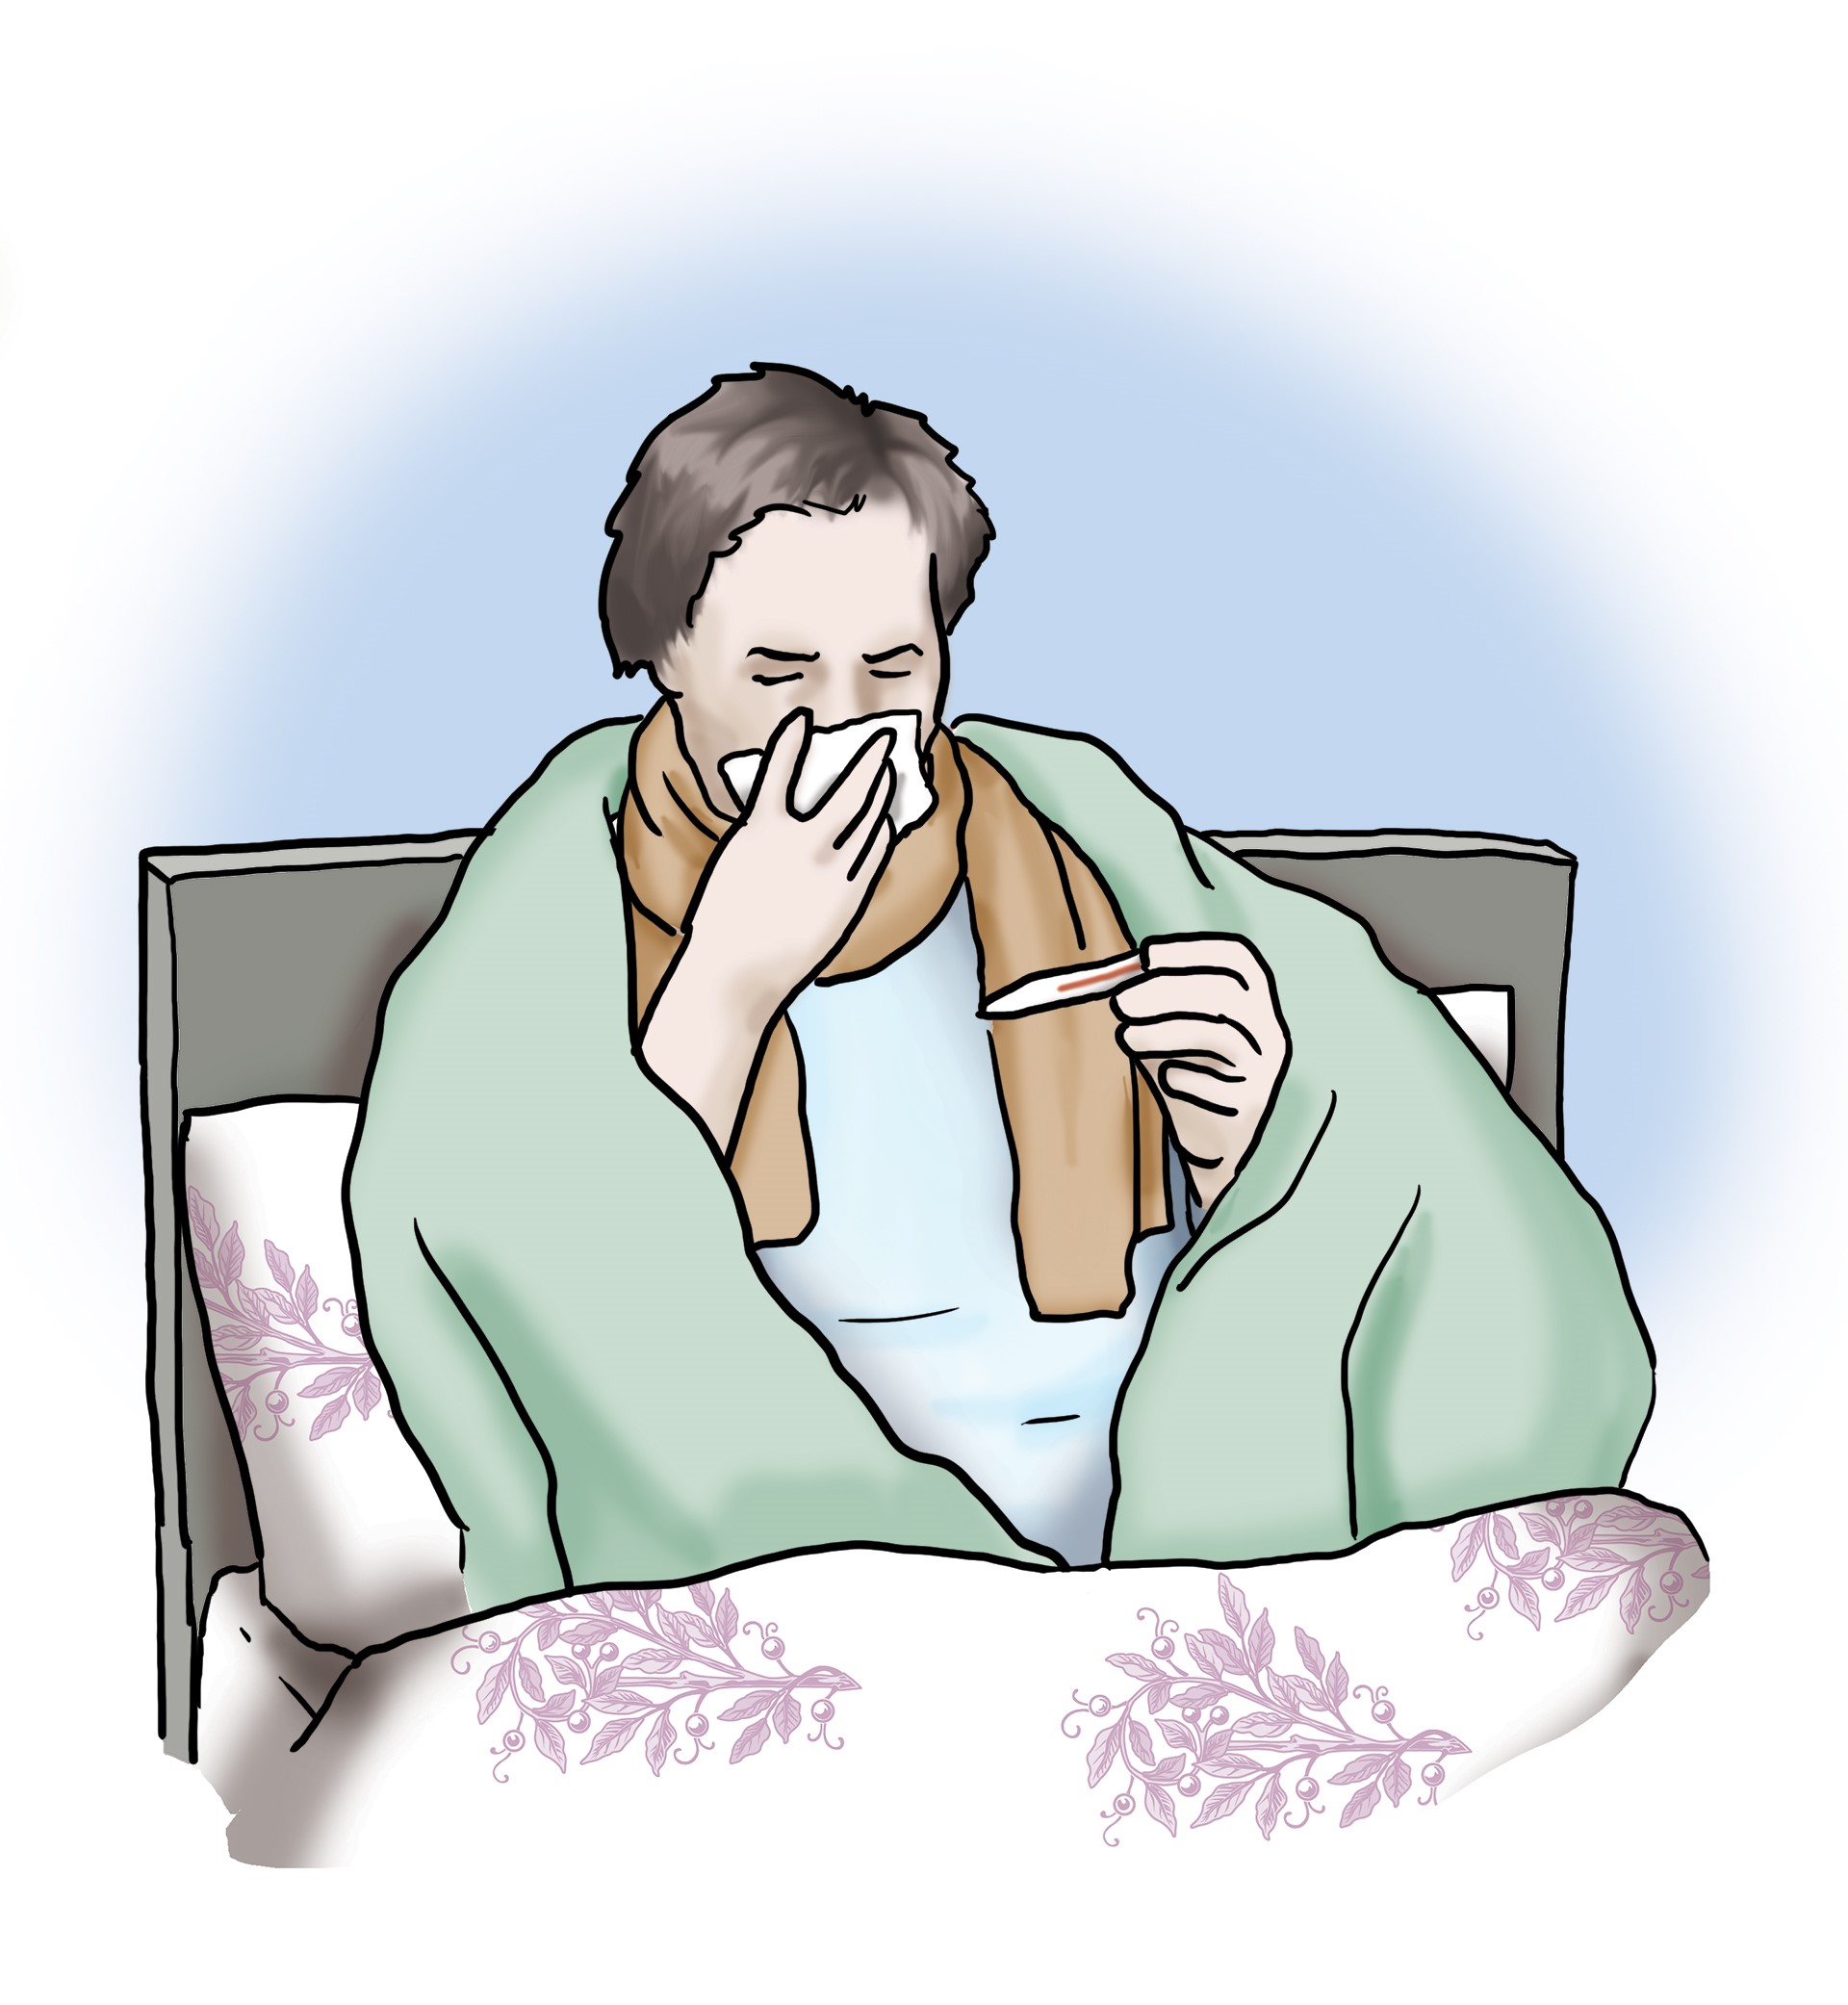 Kranke Person sitzt im Bett. Sie trägt einen Schal, ist zugedeckt, putzt sich die Nase und schaut auf ein Fieberthermometer.